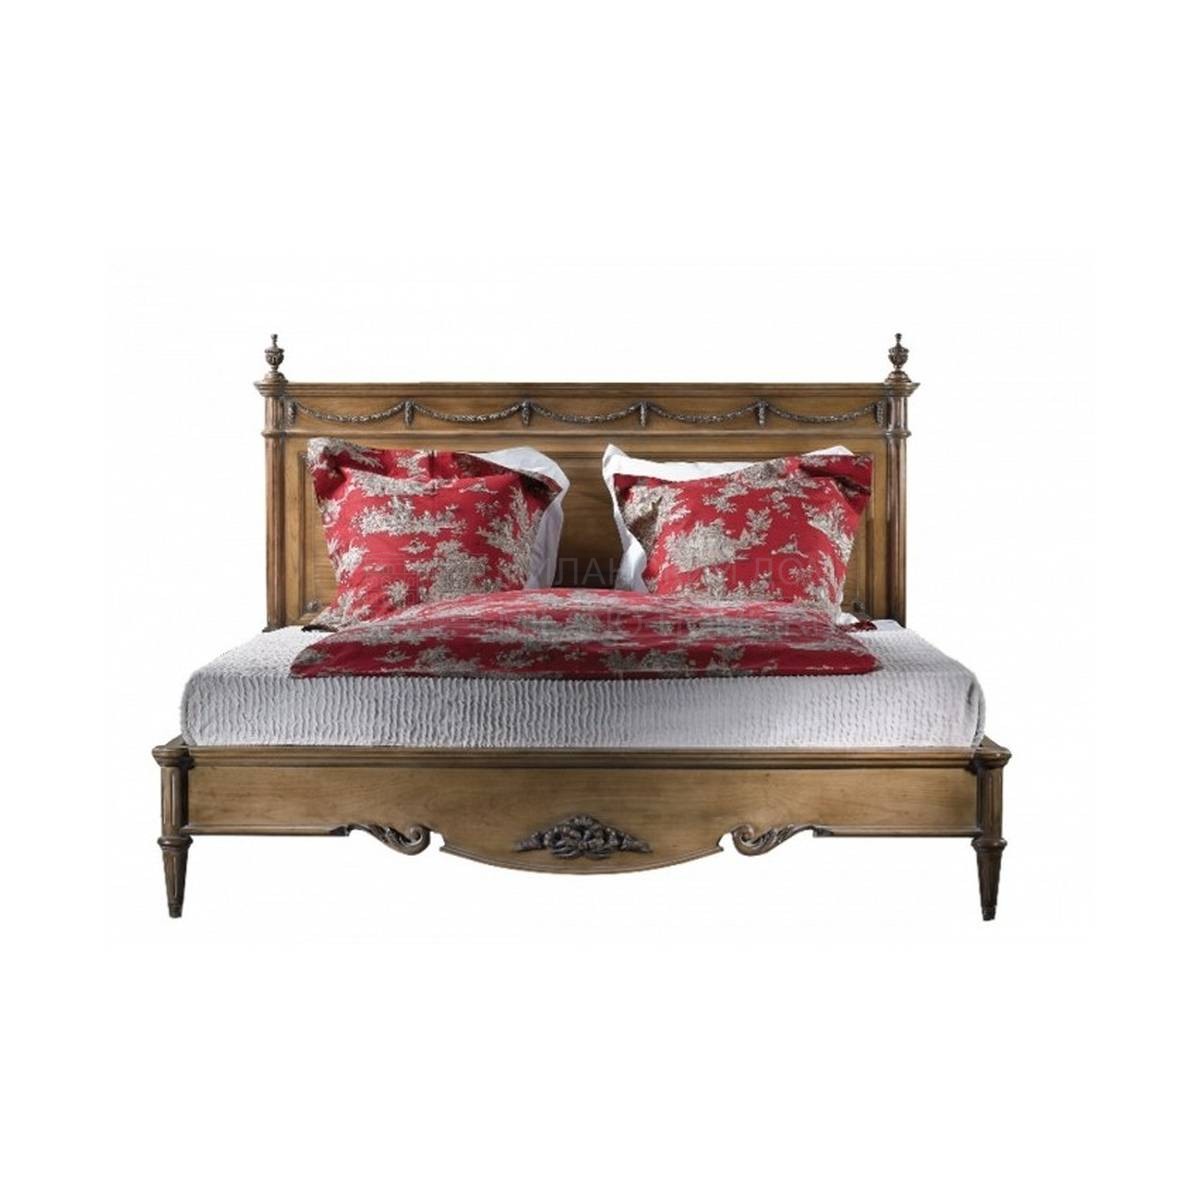 Кровать с деревянным изголовьем Louis XVI / 28010 из Франции фабрики LABARERE